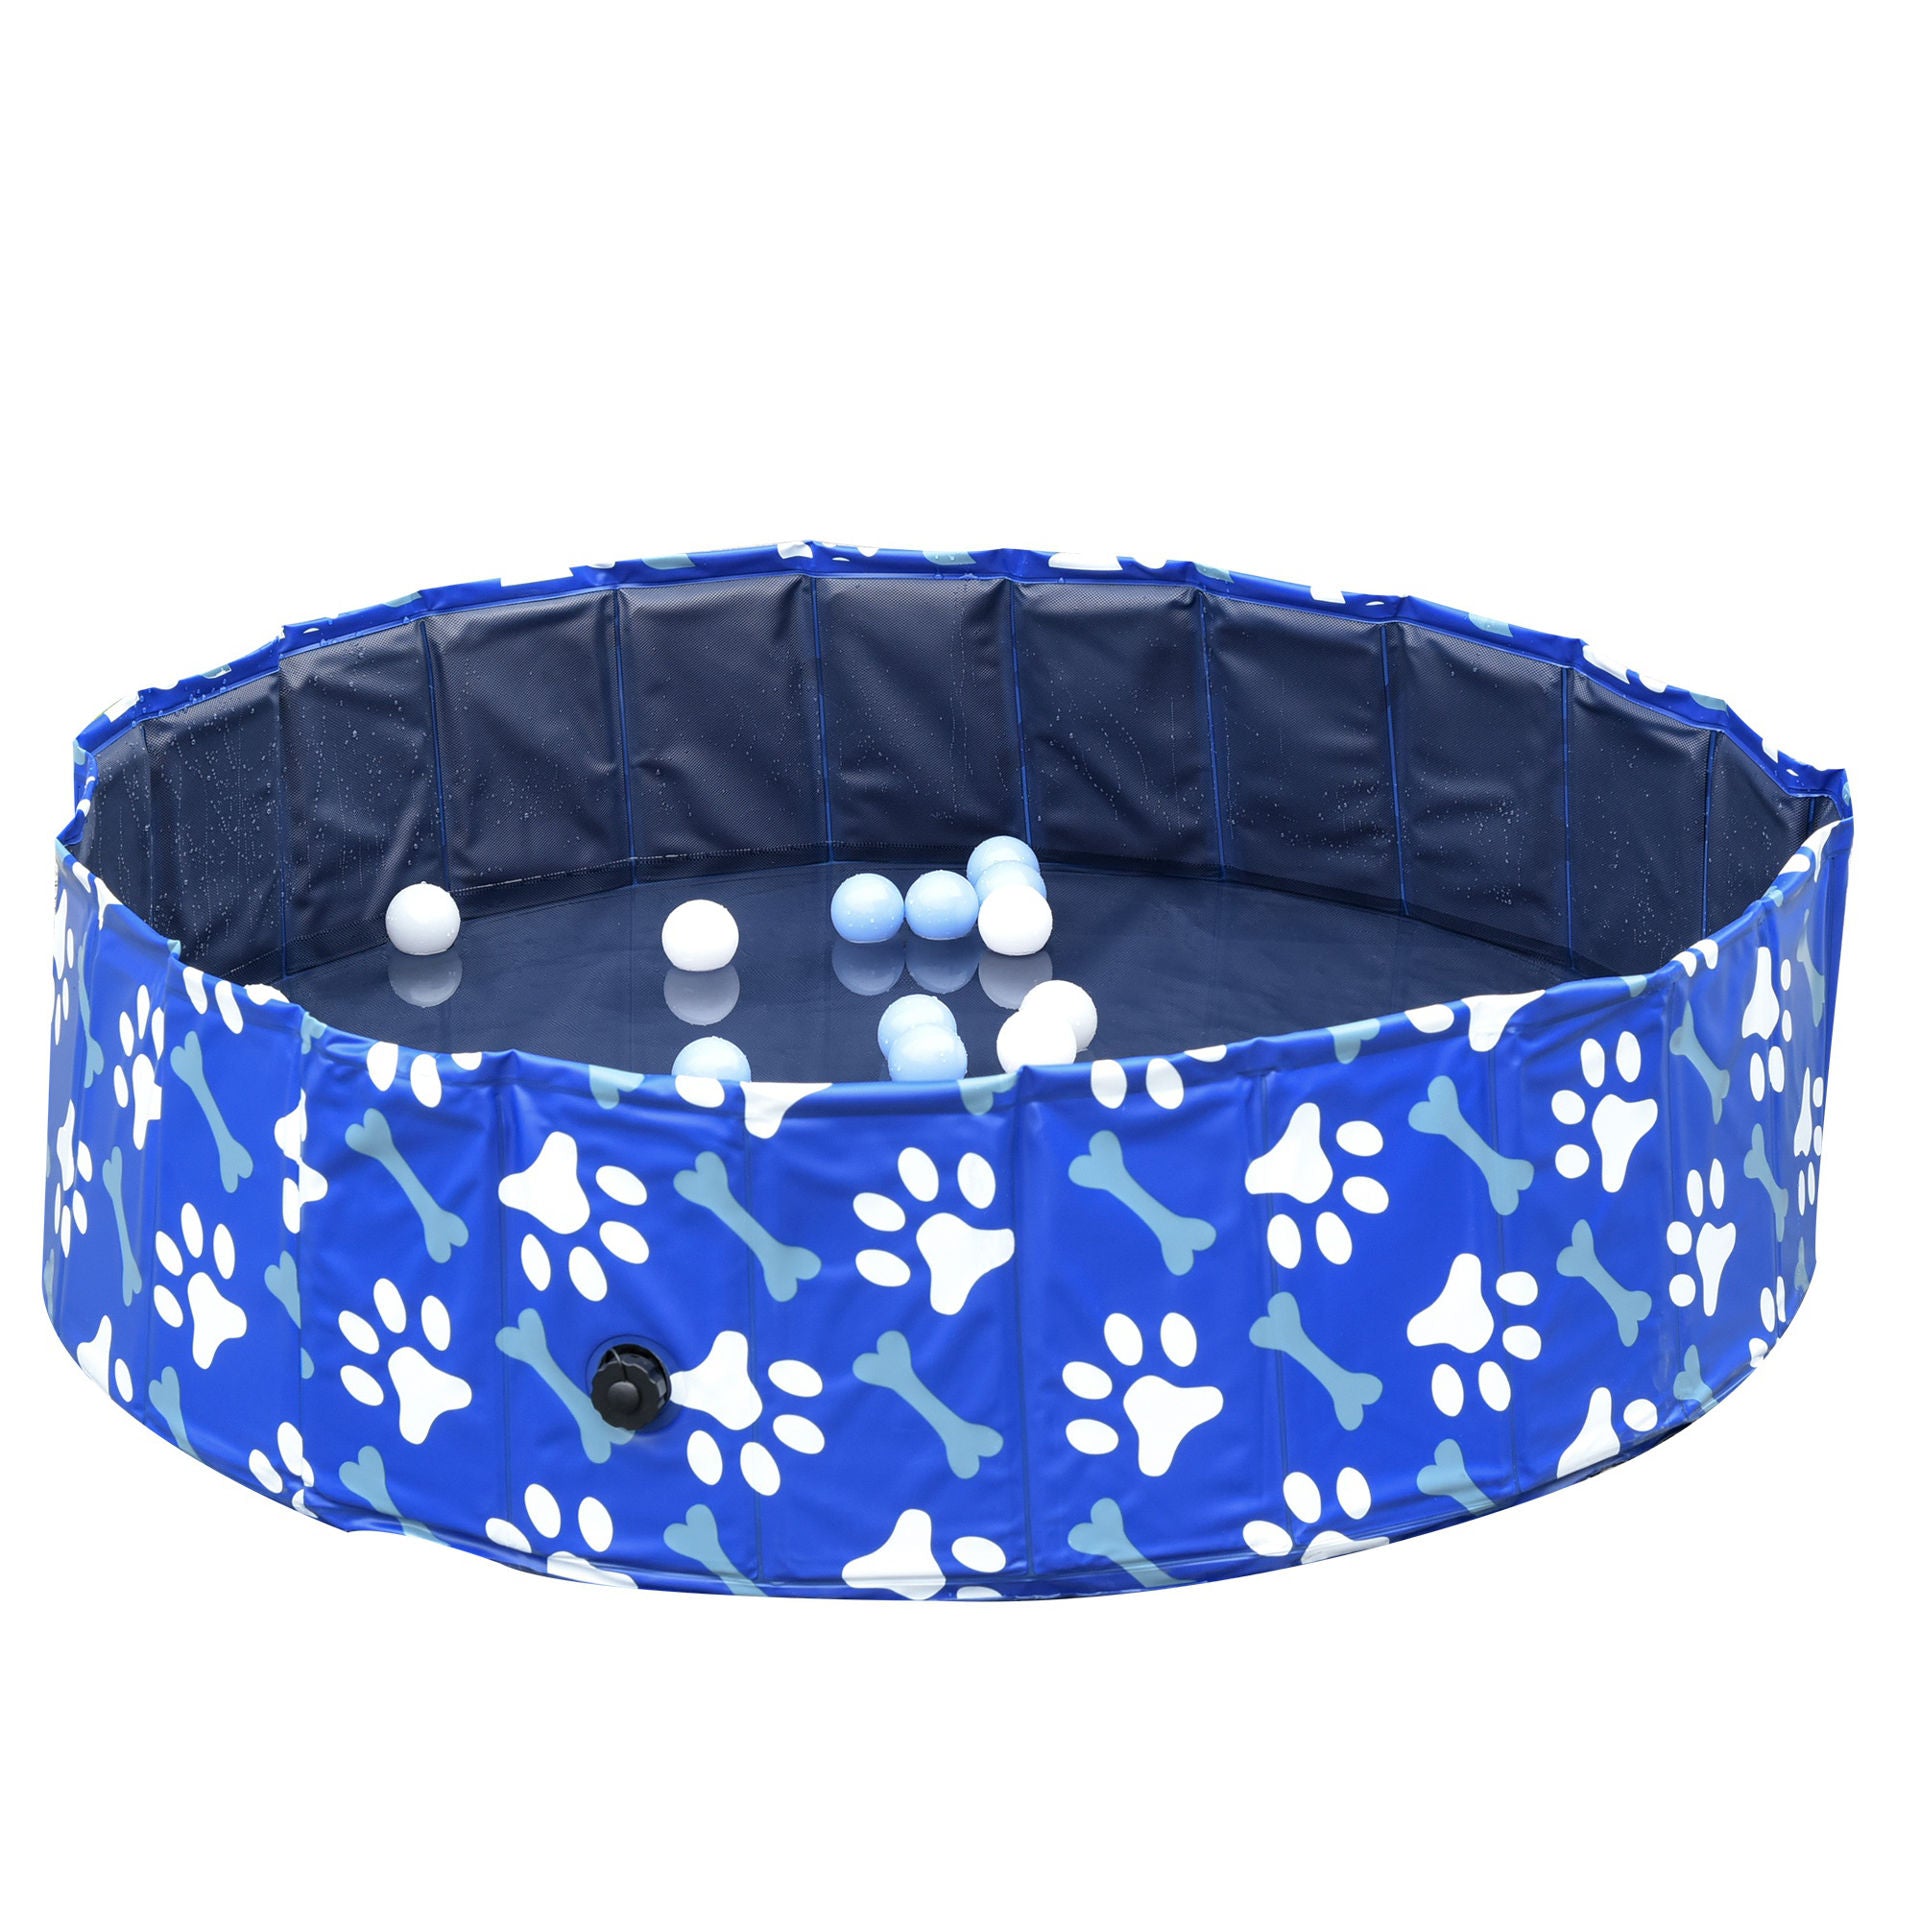 Bain pour chien Nancy's Albion - Bleu - PVC, Panneau composite - 12,99 cm x 12,6 cm x 3,54 cm